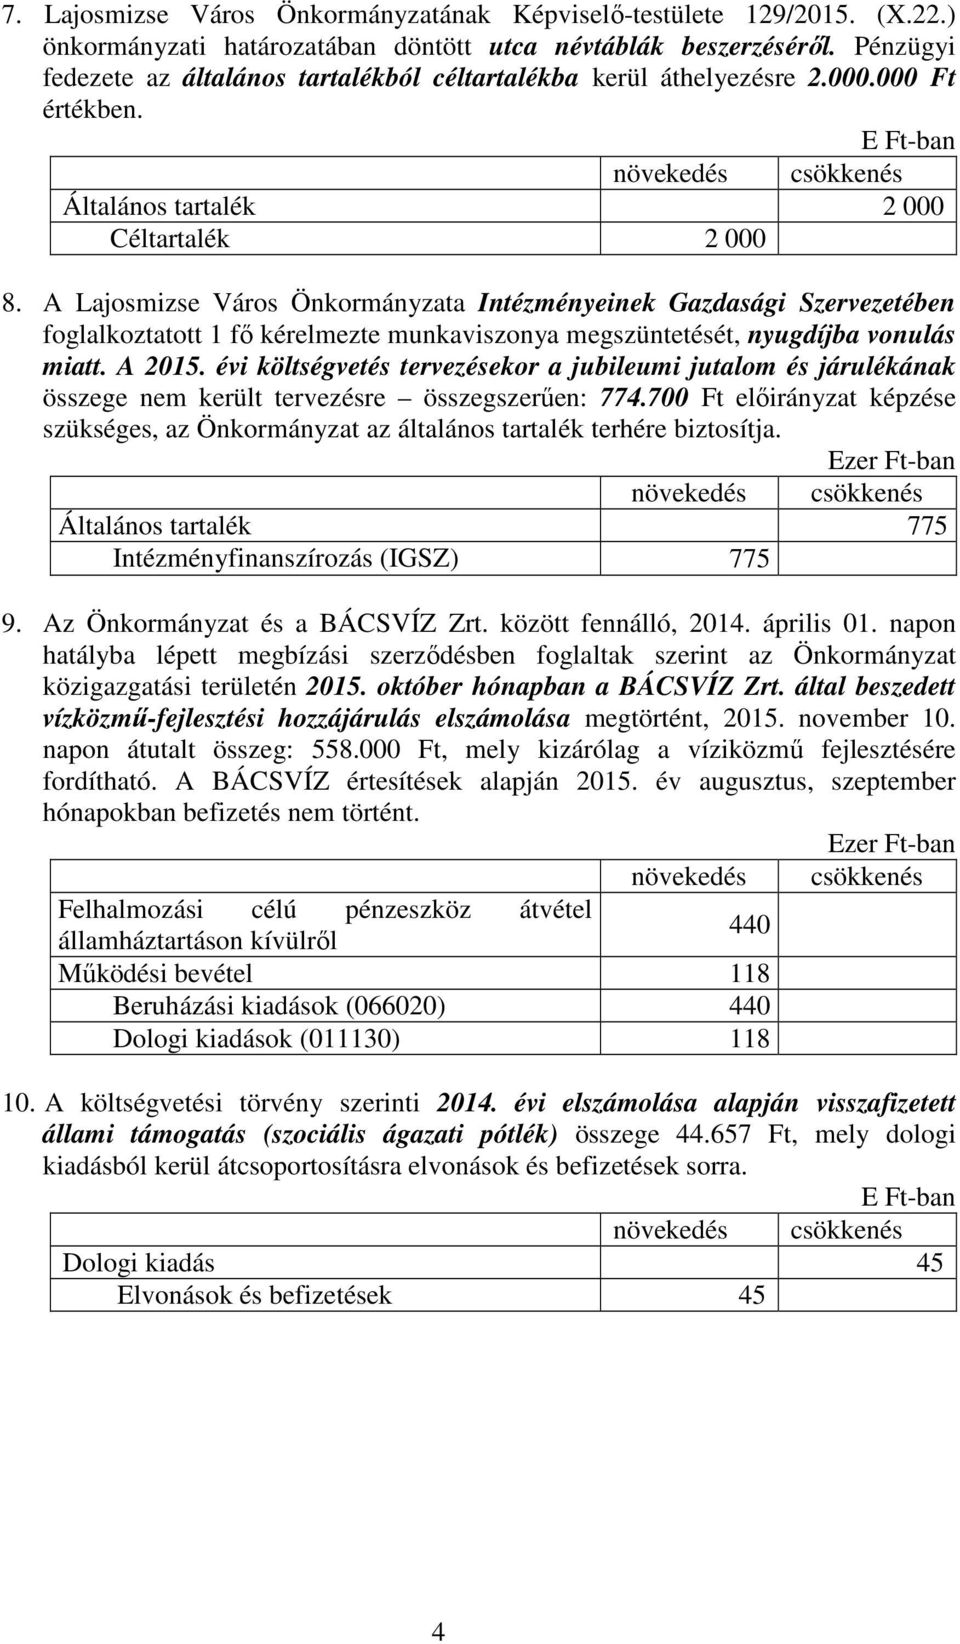 A Lajosmizse Város Önkormányzata Intézményeinek Gazdasági Szervezetében foglalkoztatott 1 fı kérelmezte munkaviszonya megszüntetését, nyugdíjba vonulás miatt. A 2015.